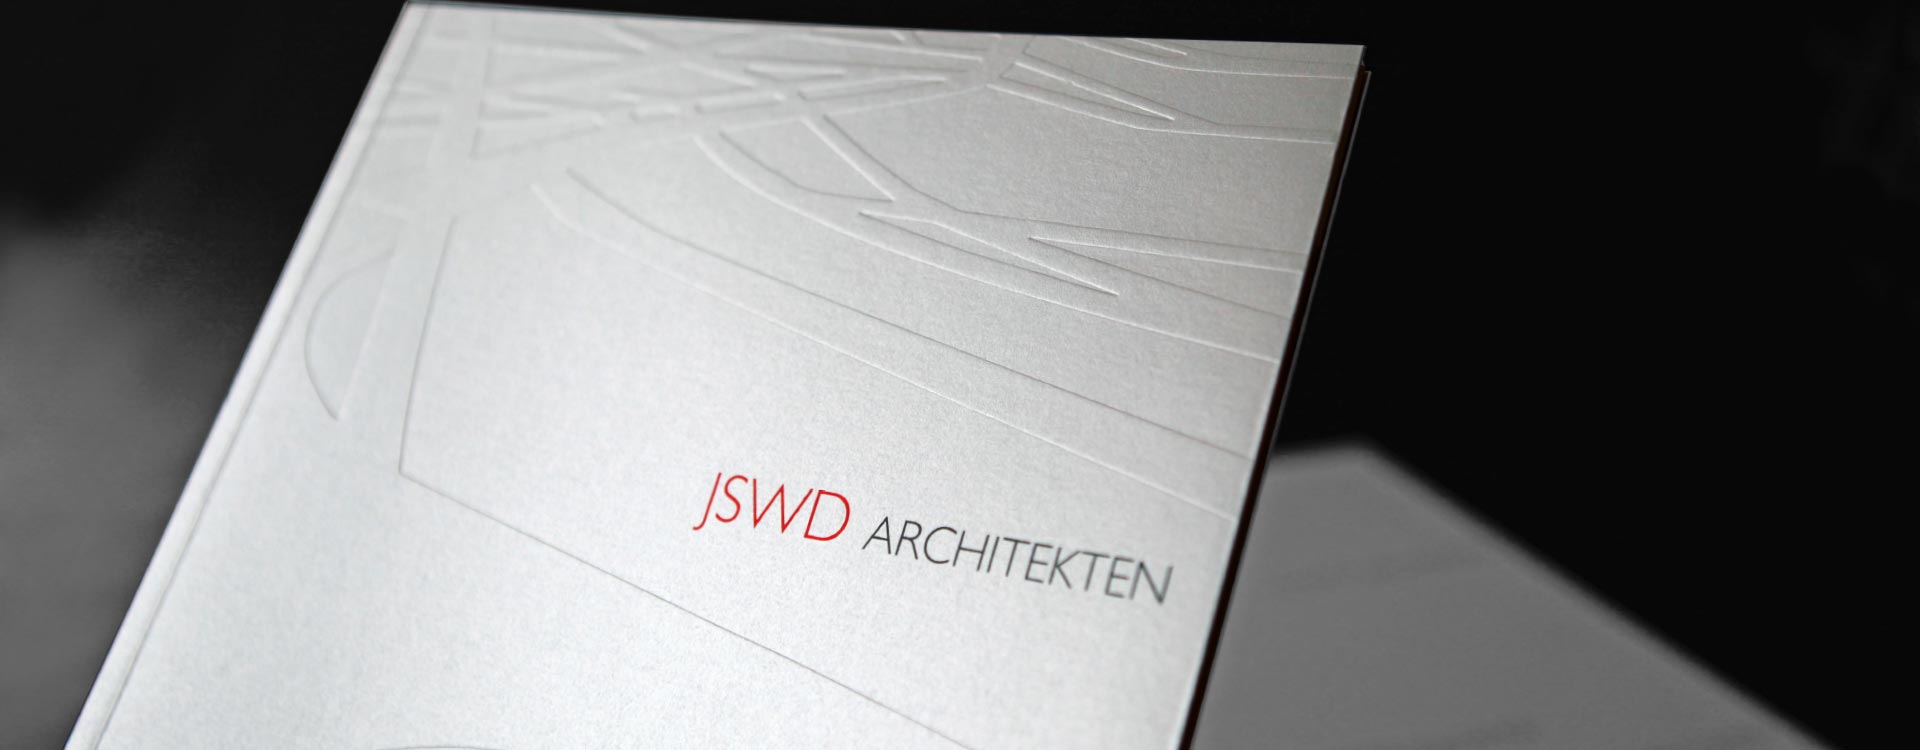 Imagebroschüre JSWD Architekten mit Prägung auf dem Umschlag, Köln; Design: Kattrin Richter | Büro für Grafikdesign